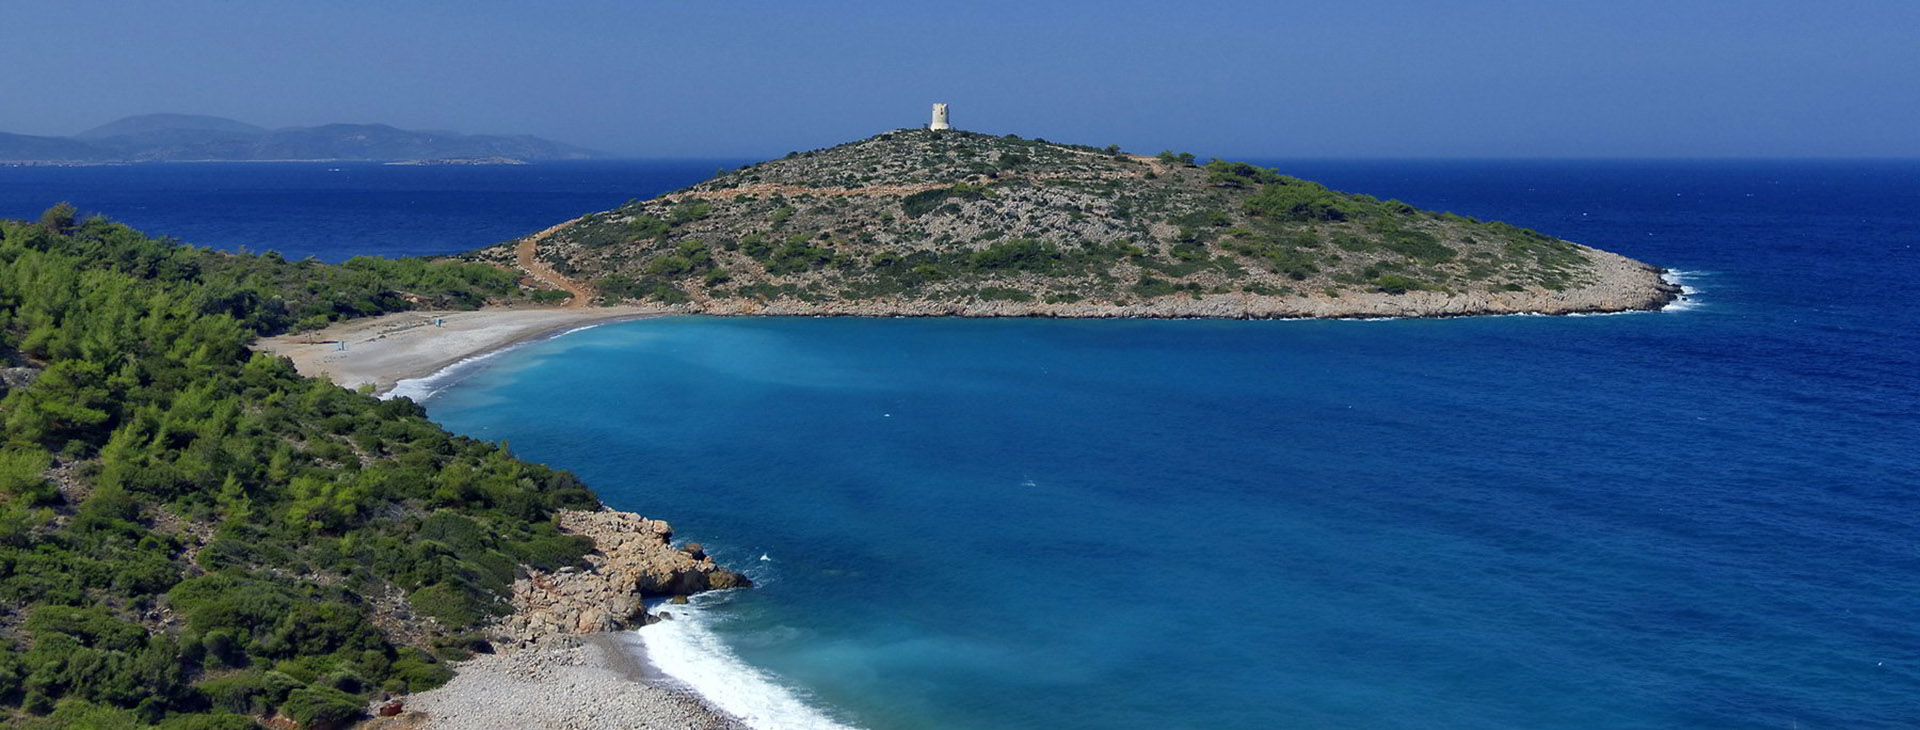 Beach at Chios island